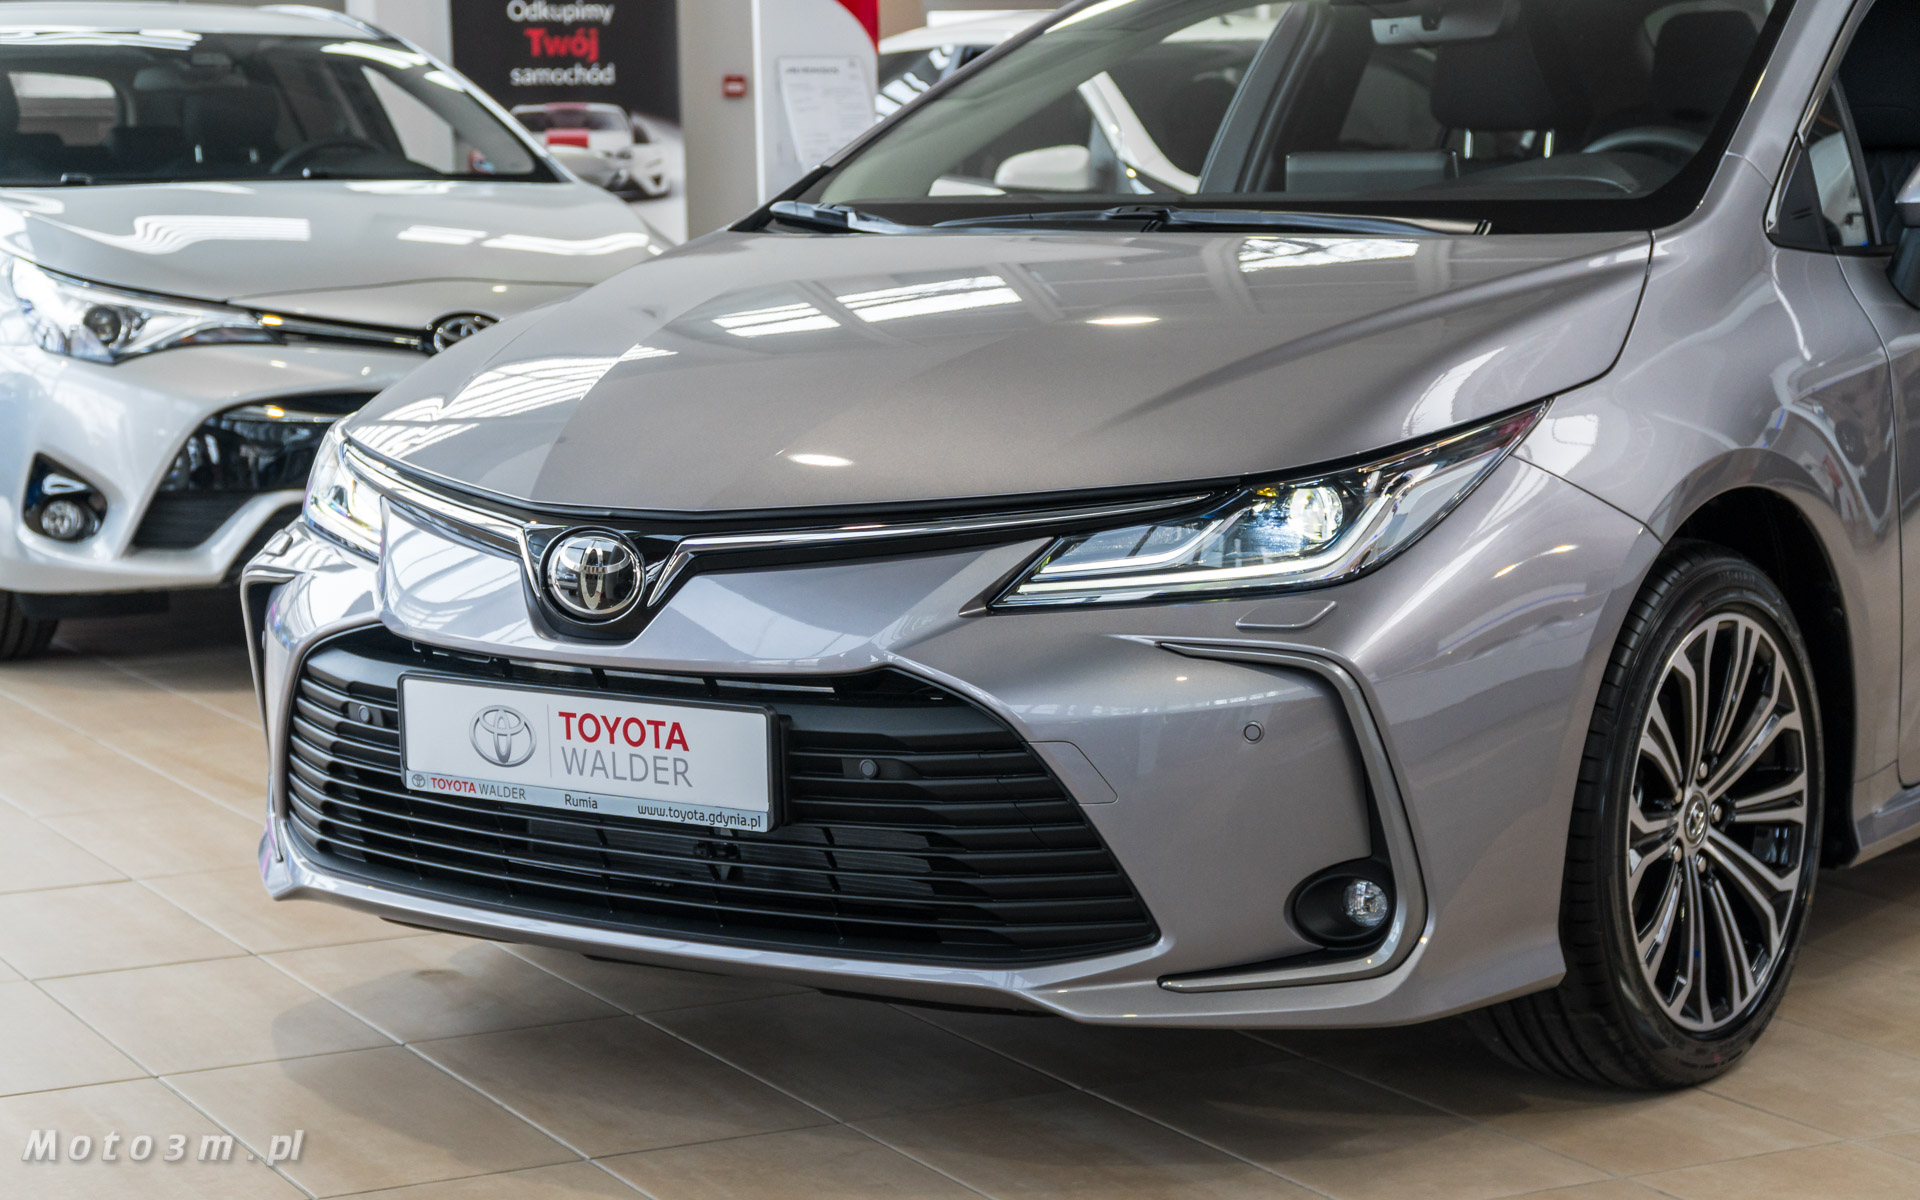 Nowa Toyota Corolla wjechała do trójmiejskich salonów